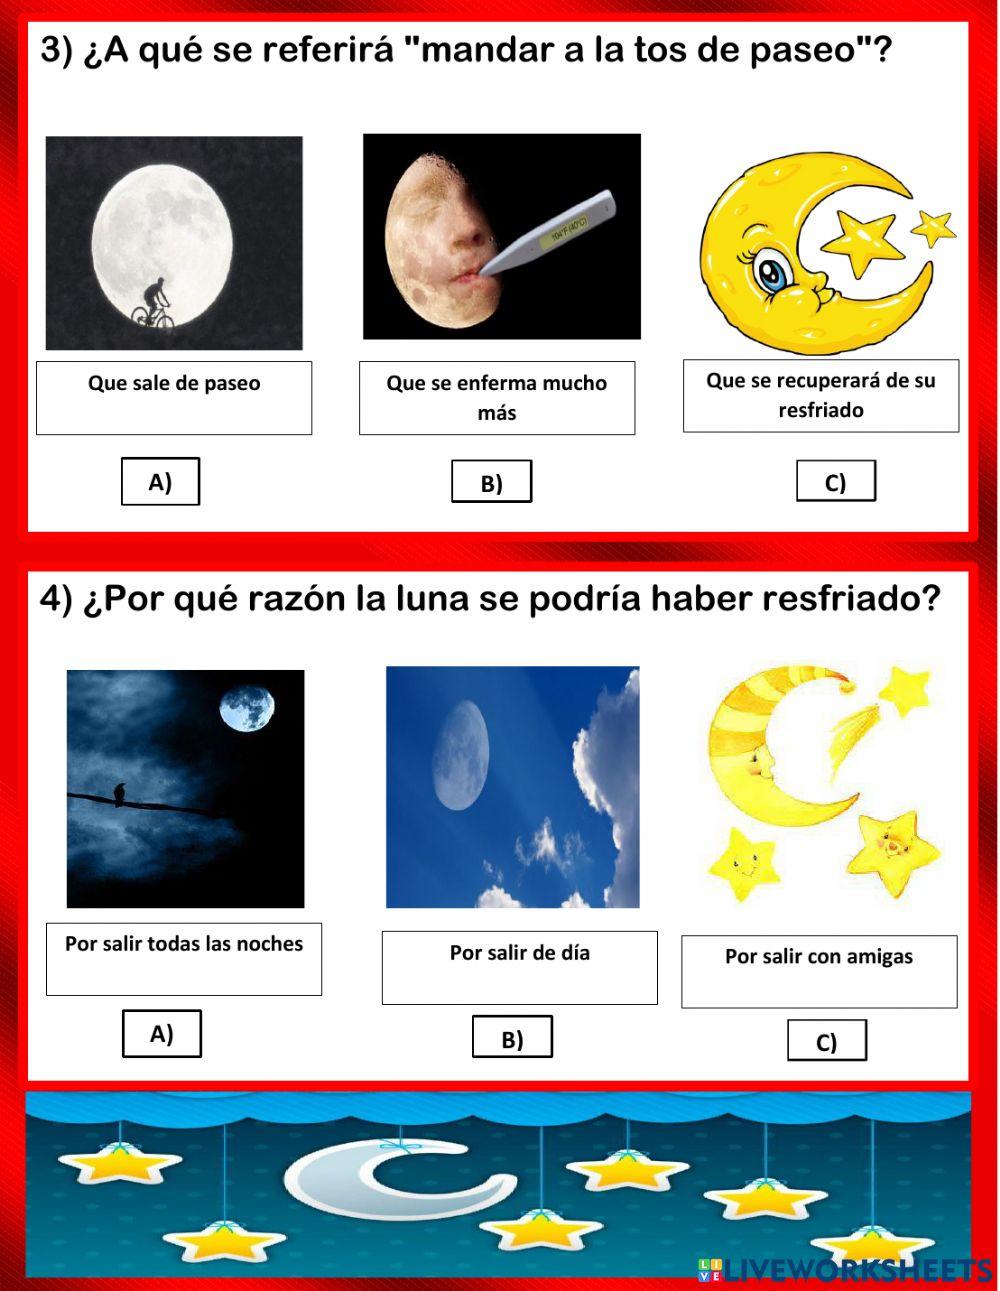 1° Lenguaje y comunicación: ficha interactiva poema La Luna tiene tos 06.04.2021